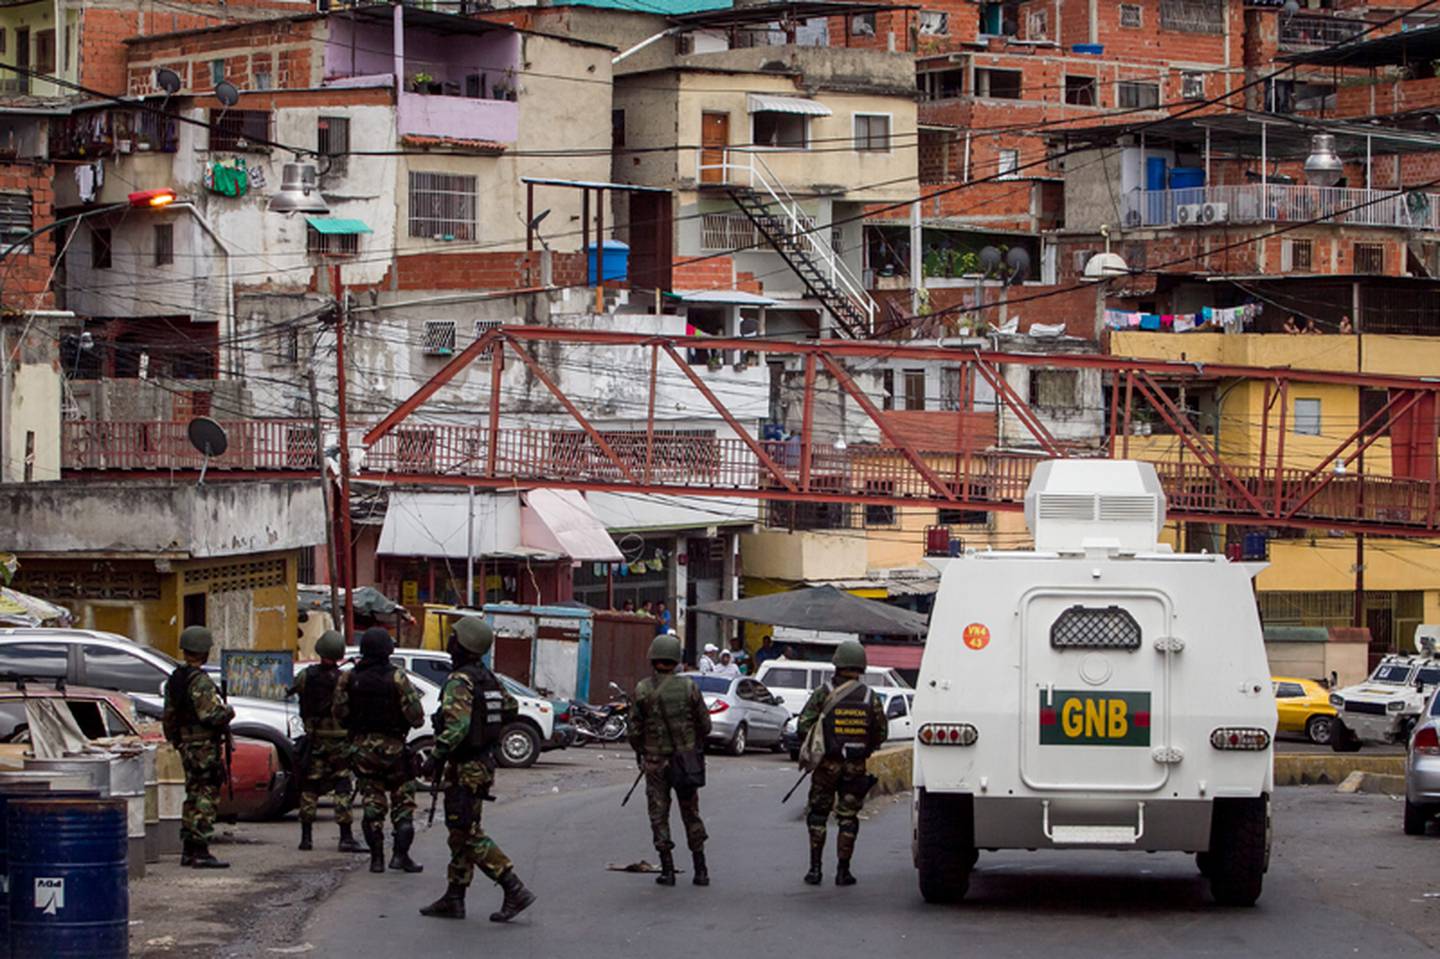 17 fallecidos en ofensiva contra delincuencia en Venezuela La Nación